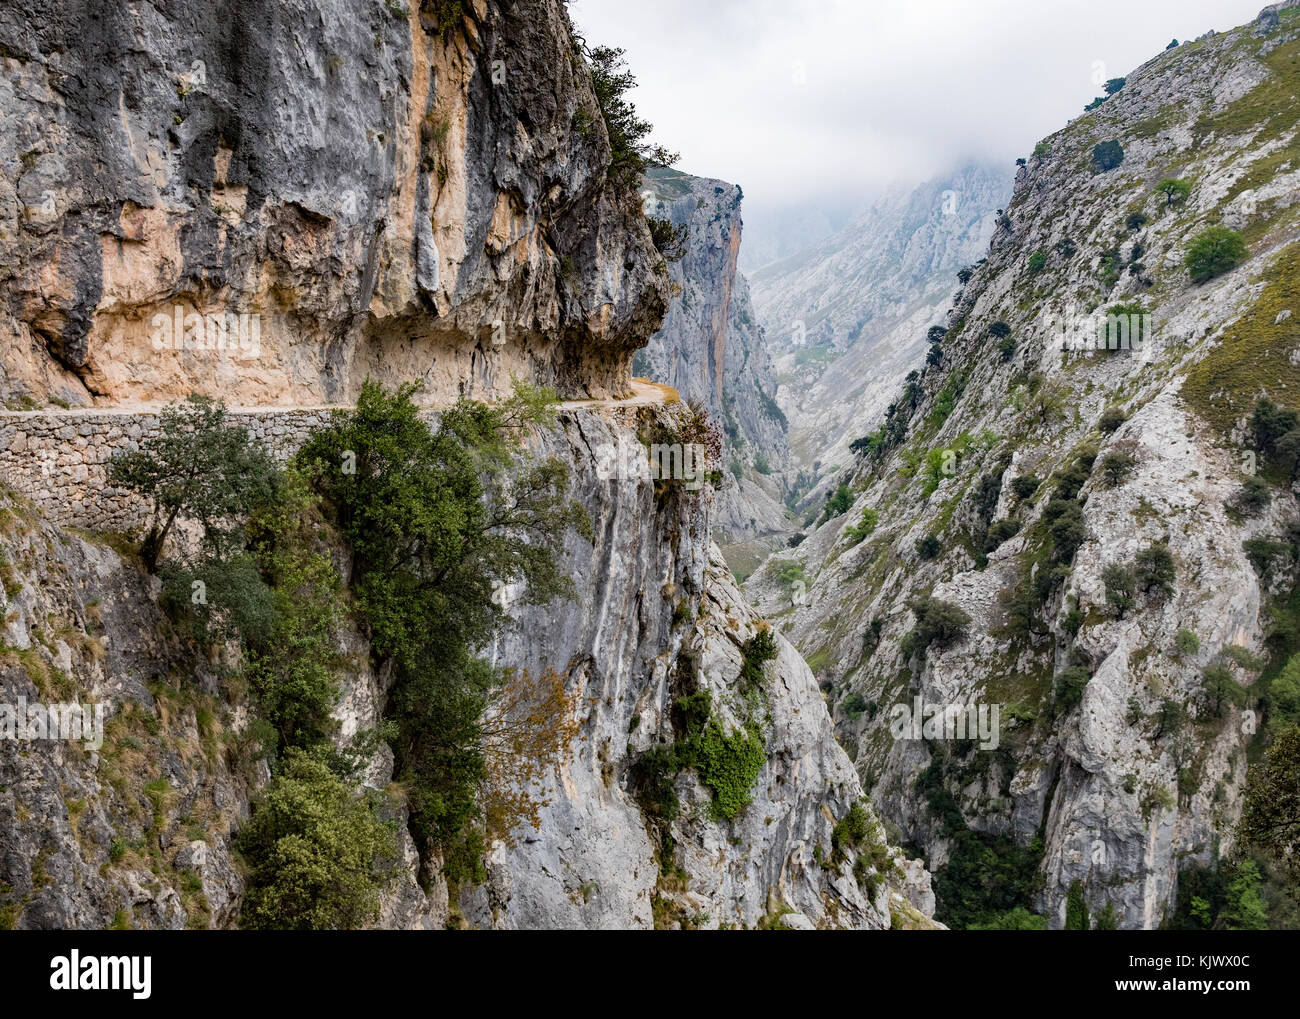 Livello alto sentiero intagliato nella roccia a strapiombo faccia della Gola di Cares una profonda e spettacolare canyon che corre attraverso il Picos de Europa nel nord della Spagna Foto Stock